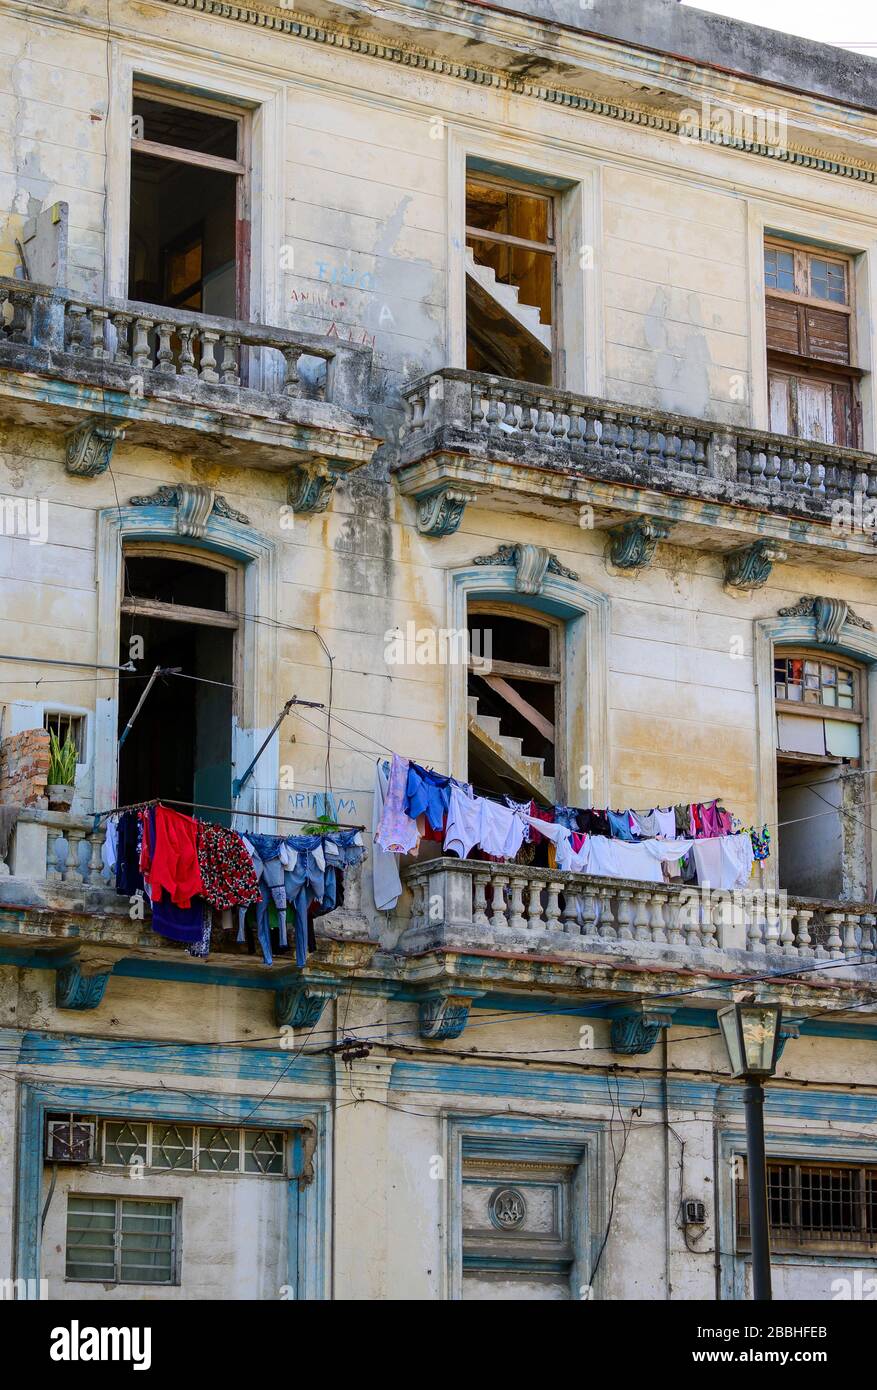 Building facade and laundry, Havana Vieja, Cuba Stock Photo